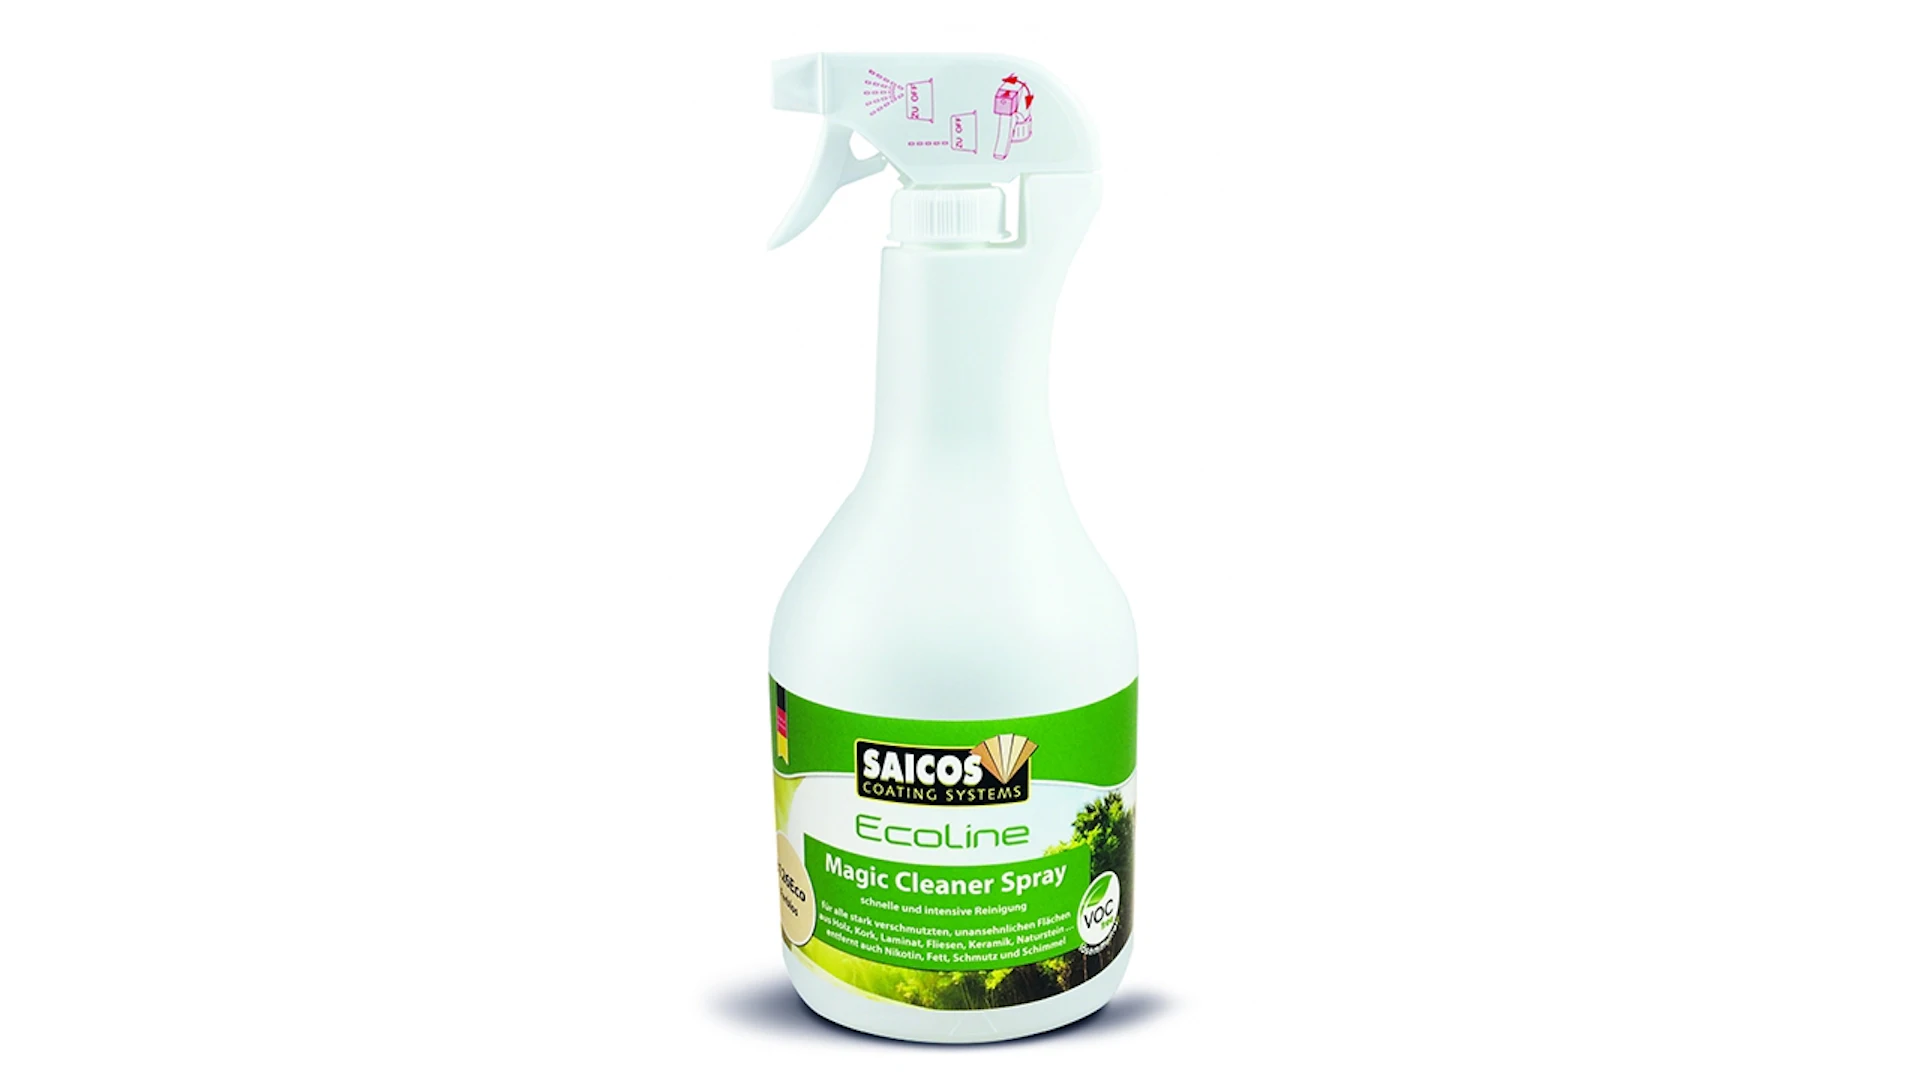 Saicos Ecoline Magic Cleaner Spray 1 Liter